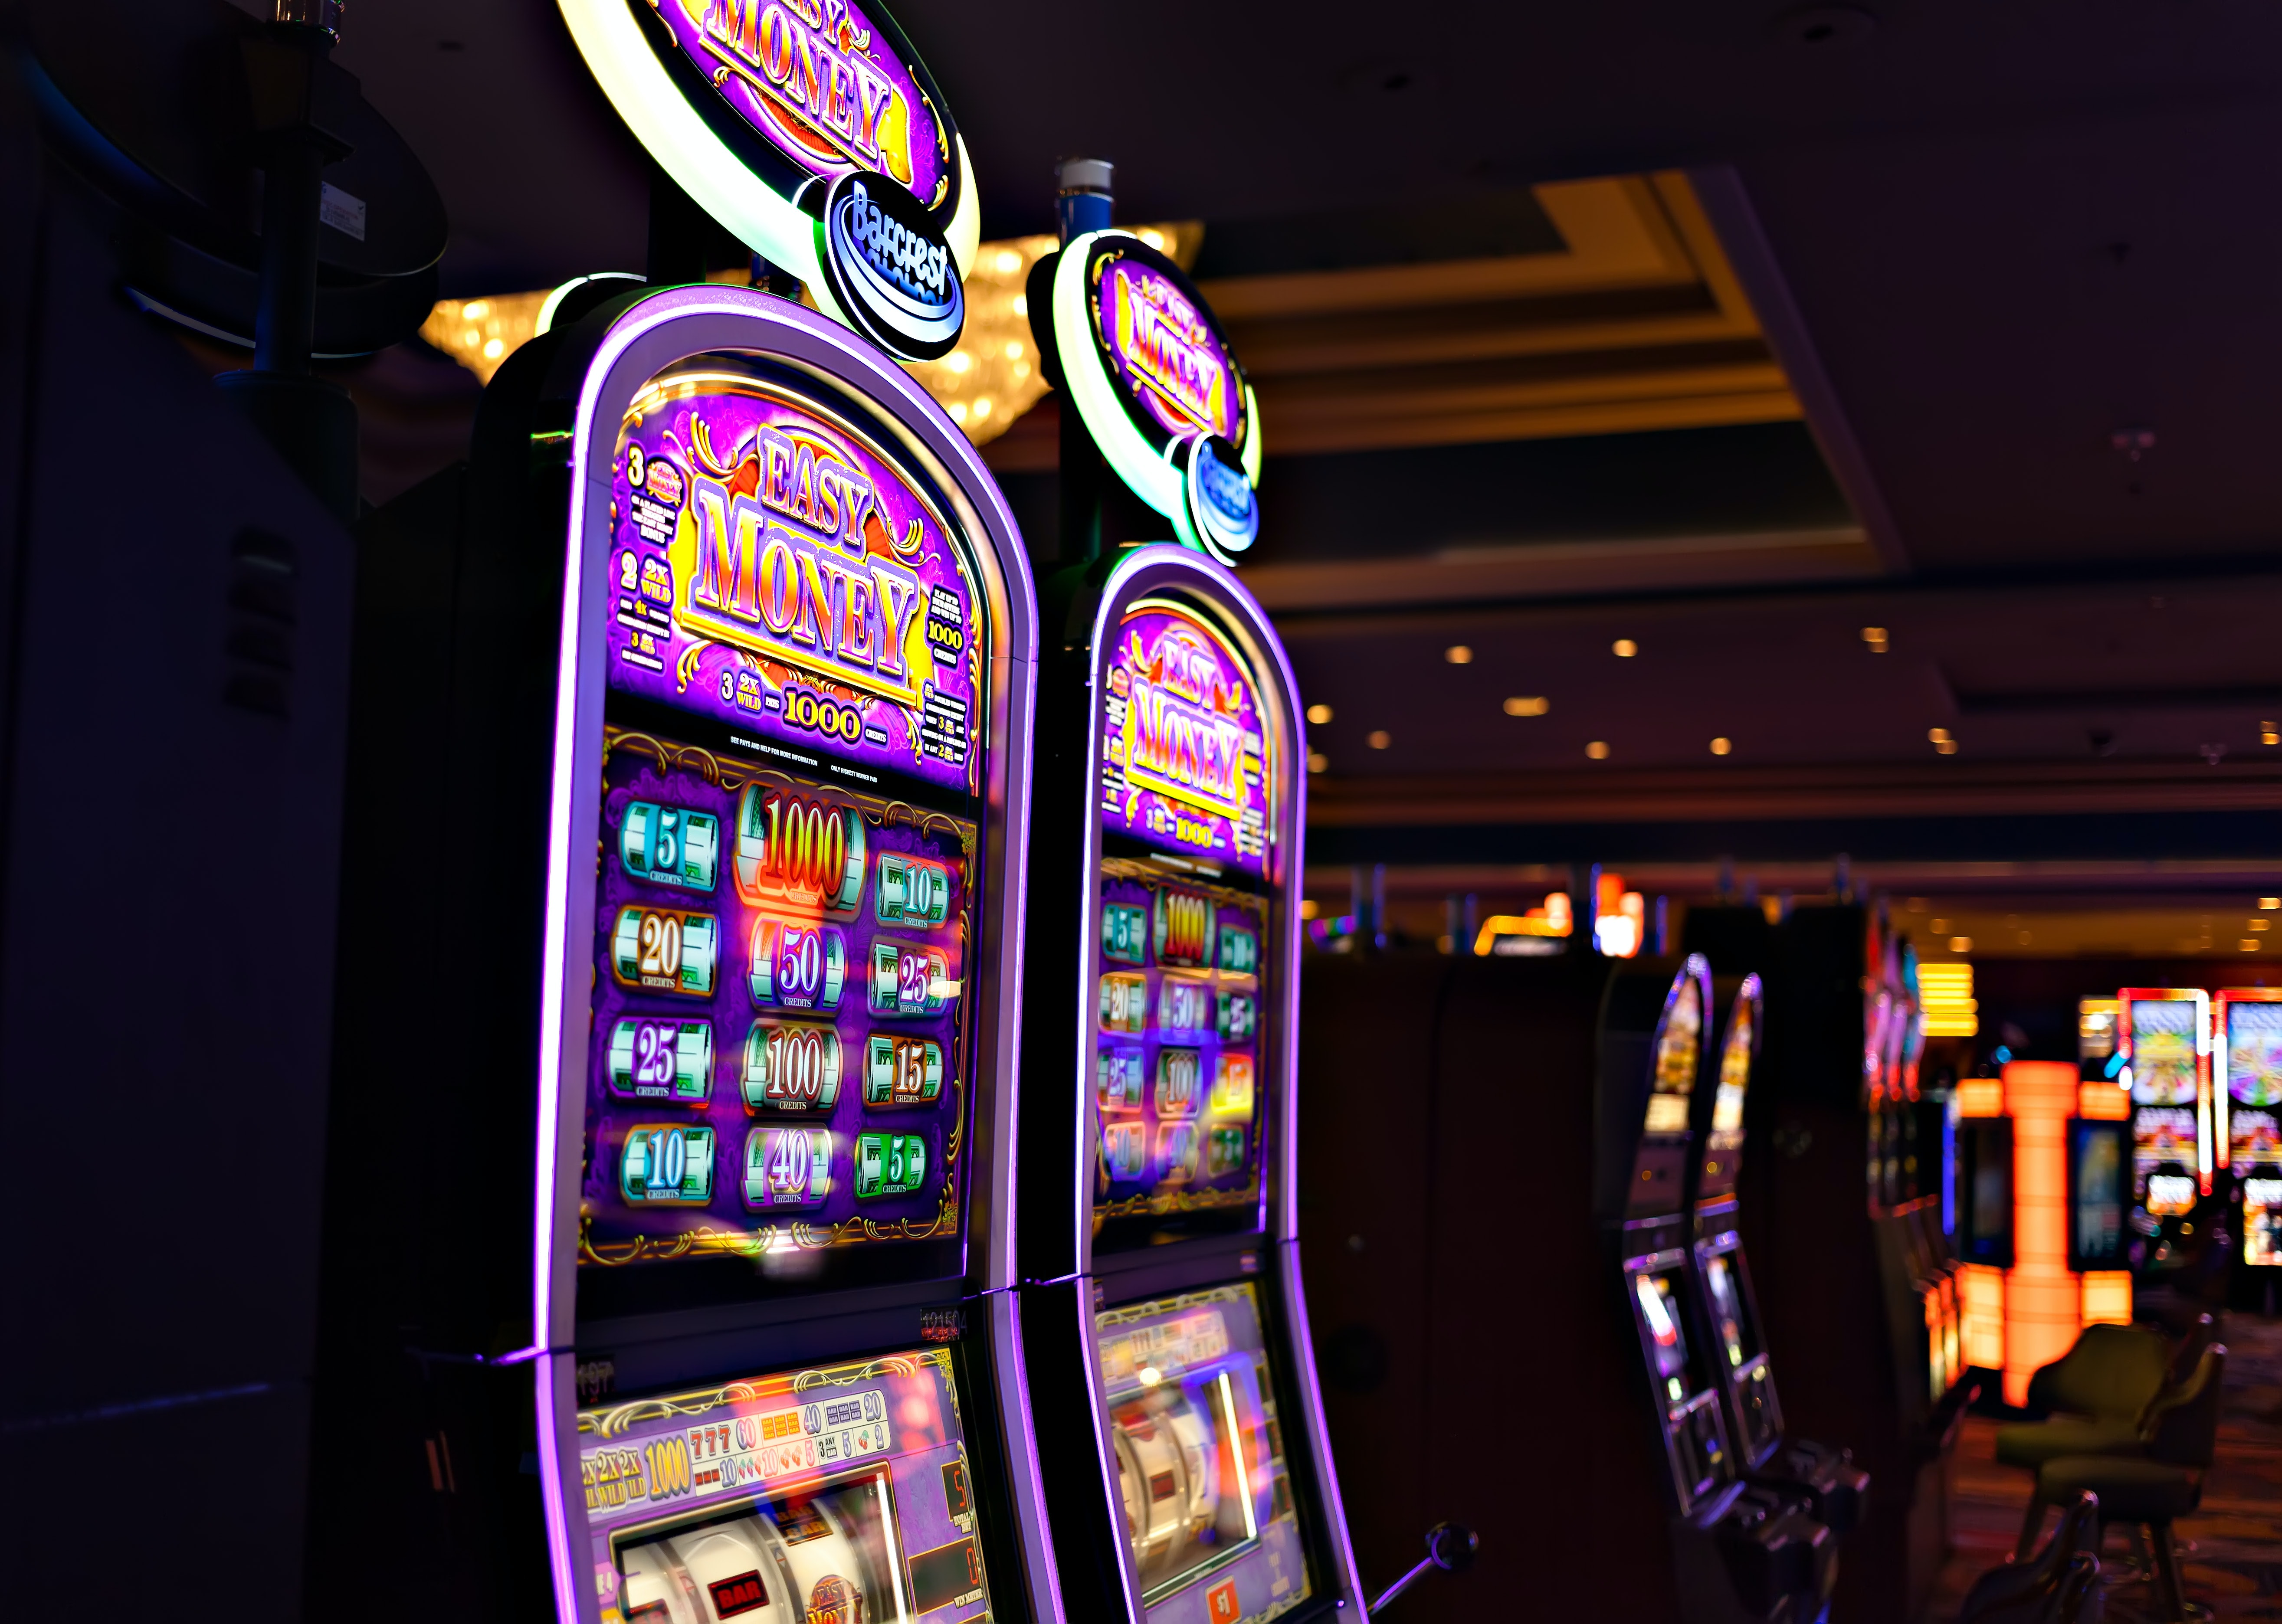 Poort verbanning scheuren De 5 beste tips voor het kiezen van een online casino om veilig te spelen |  Nieuwe Revu